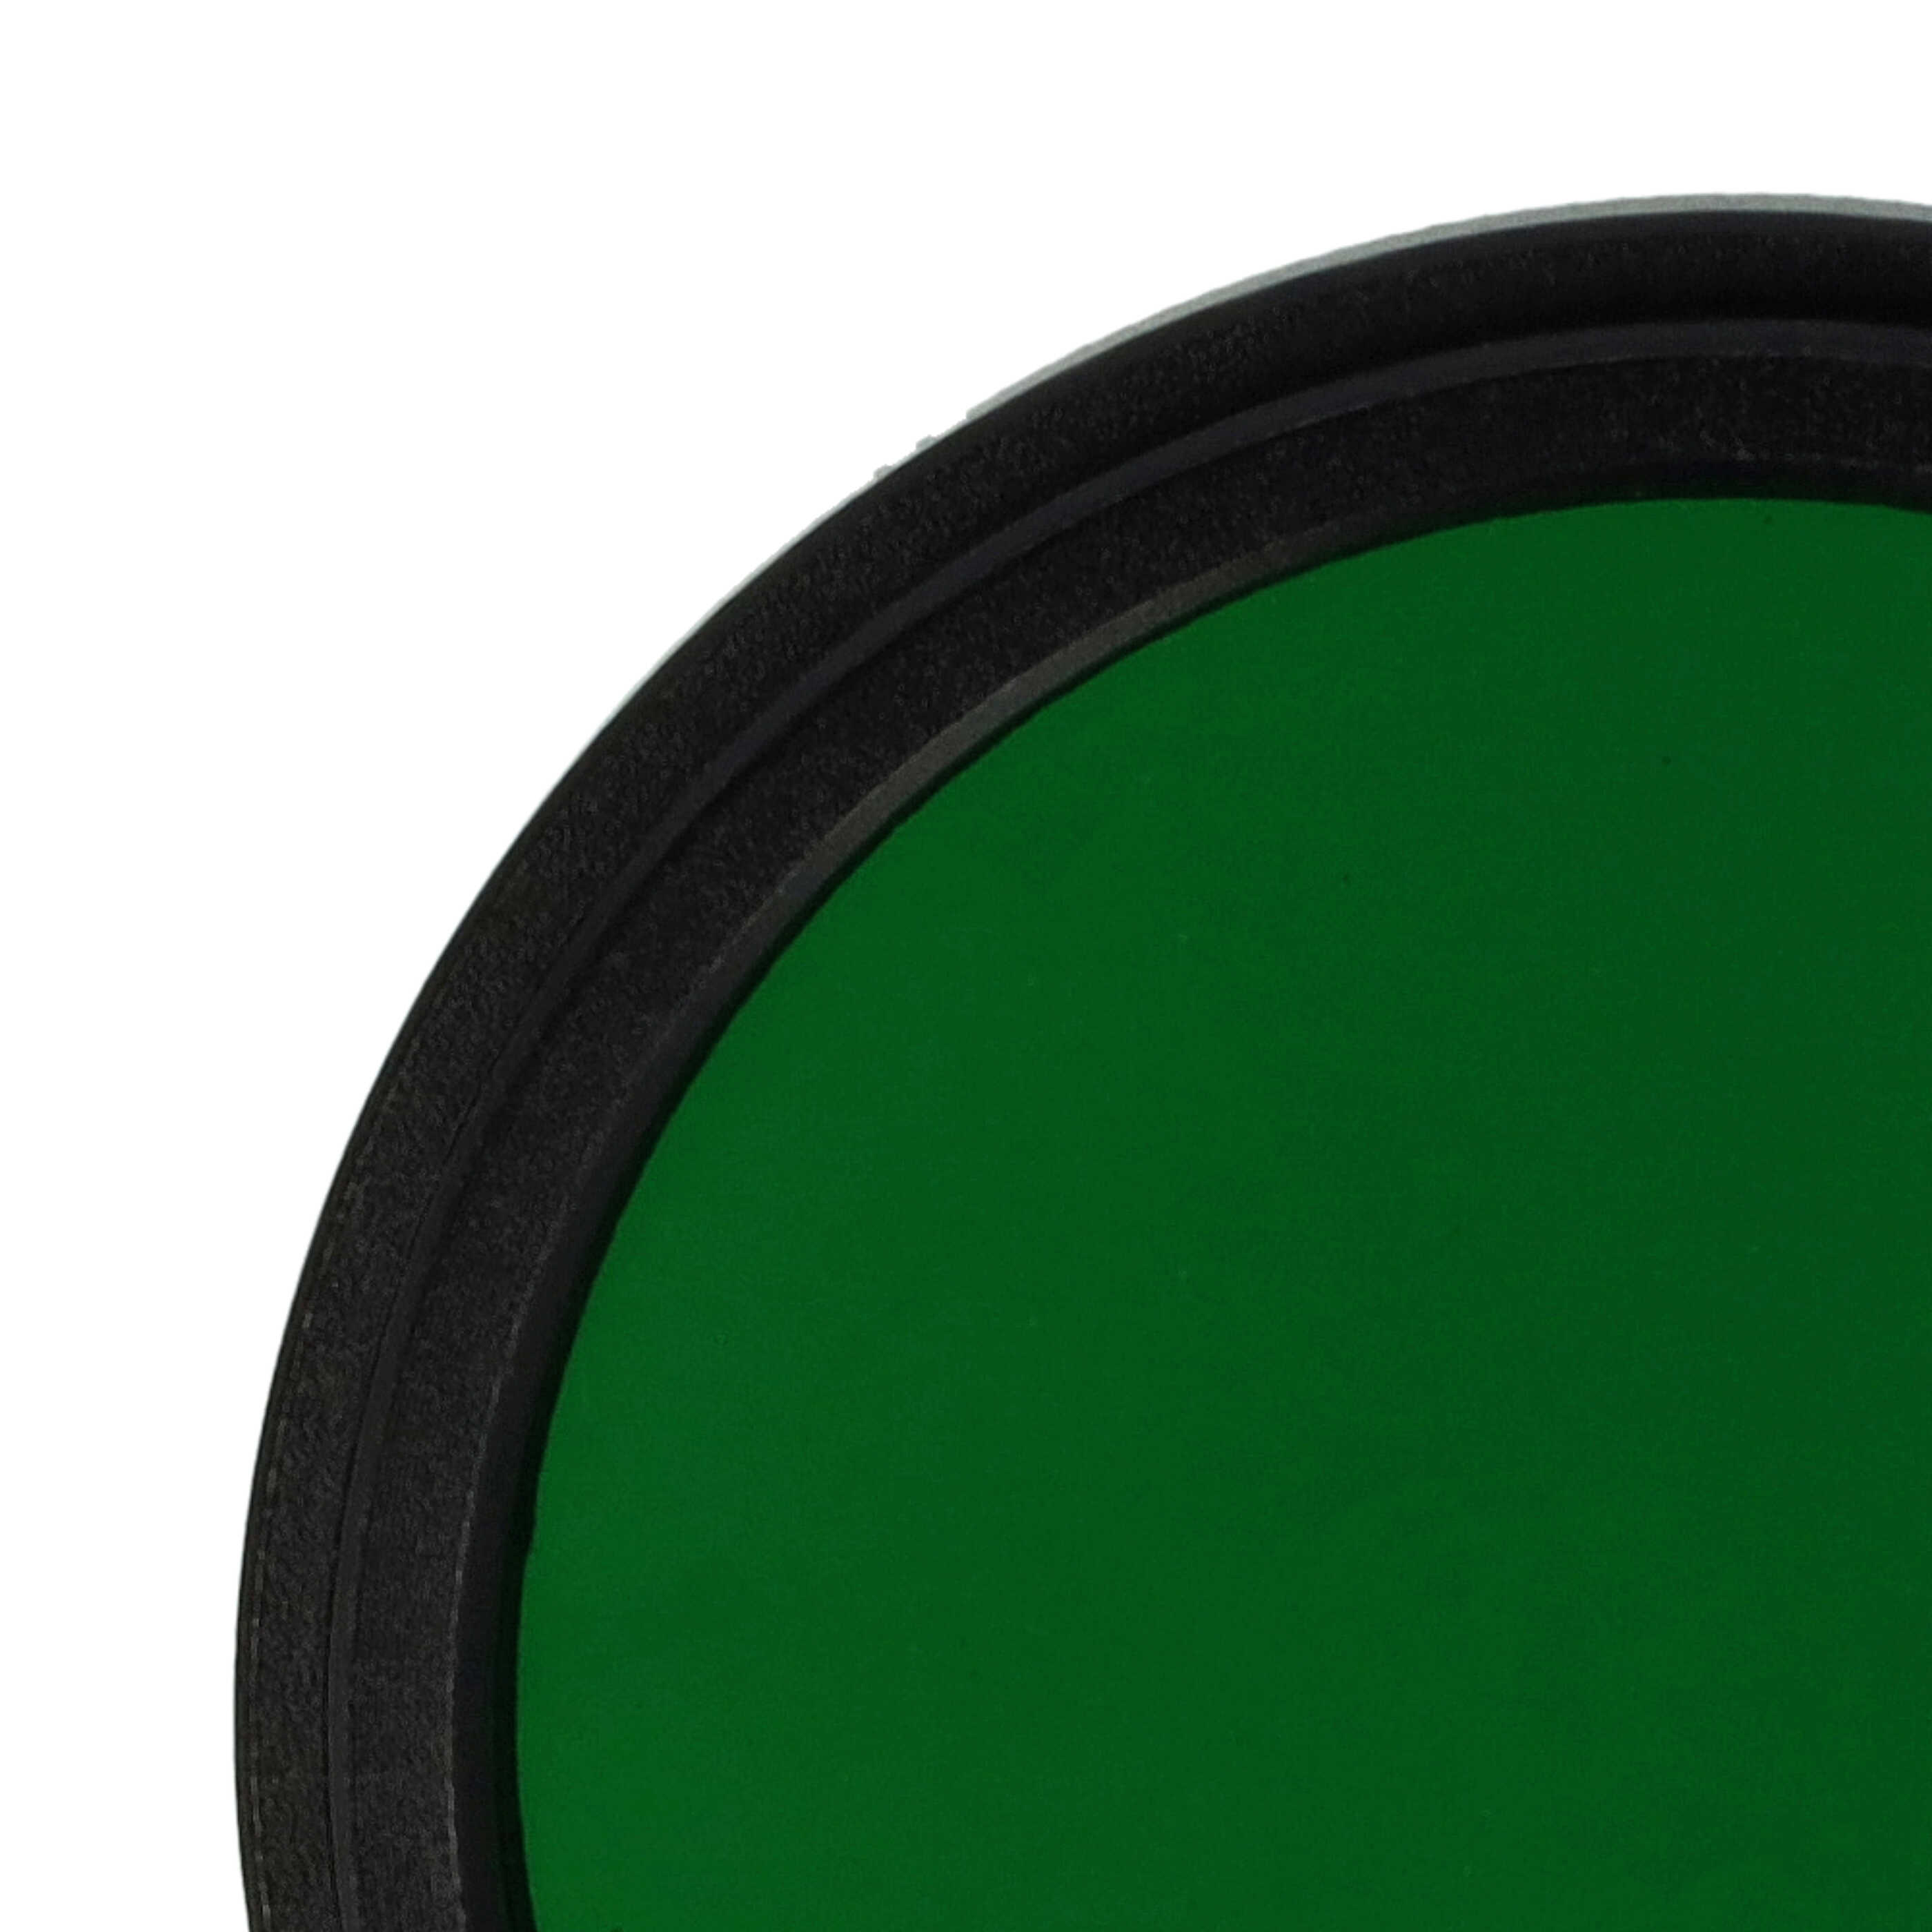 Filtro colorato per obiettivi fotocamera con filettatura da 37 mm - filtro verde